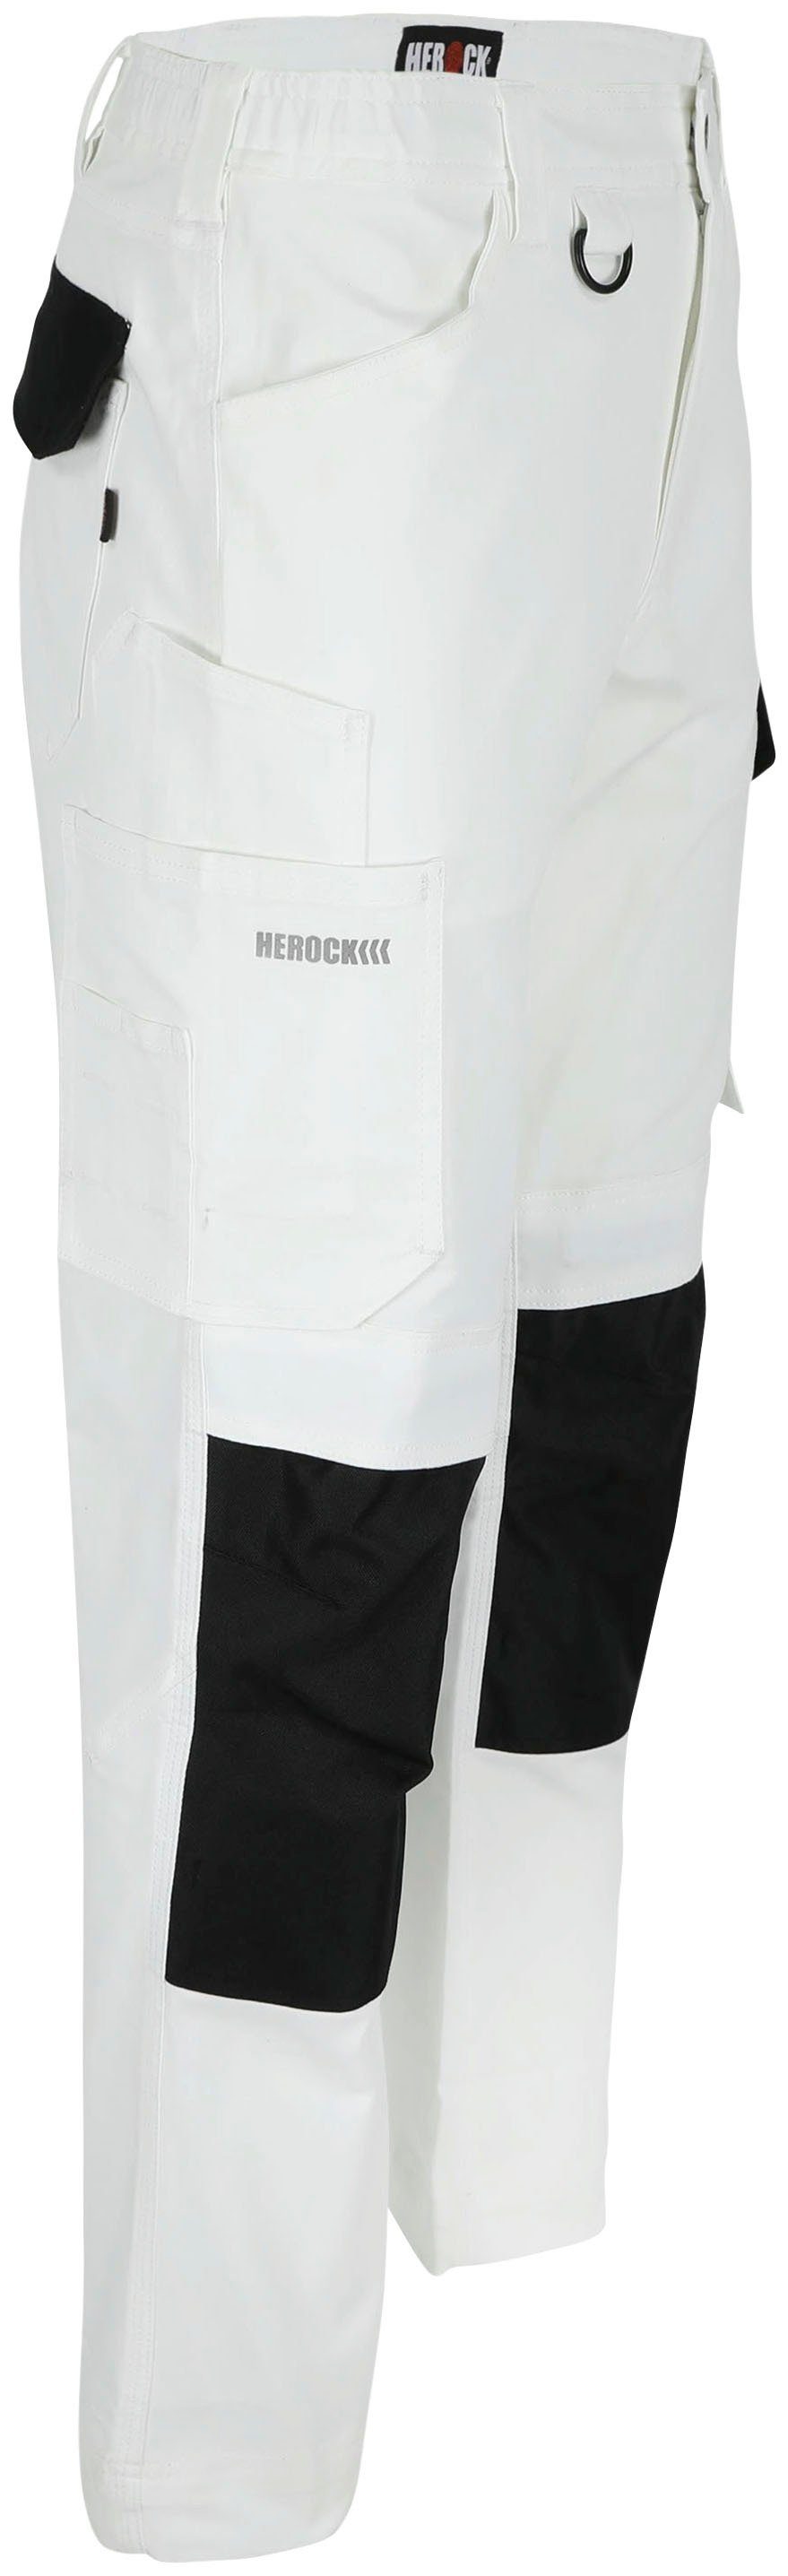 Herock Arbeitshose 2-Wege-Stretch, wasserabweisend DERO Weiβ/Schwarz Fit Multi-Pocket, Passform, Slim